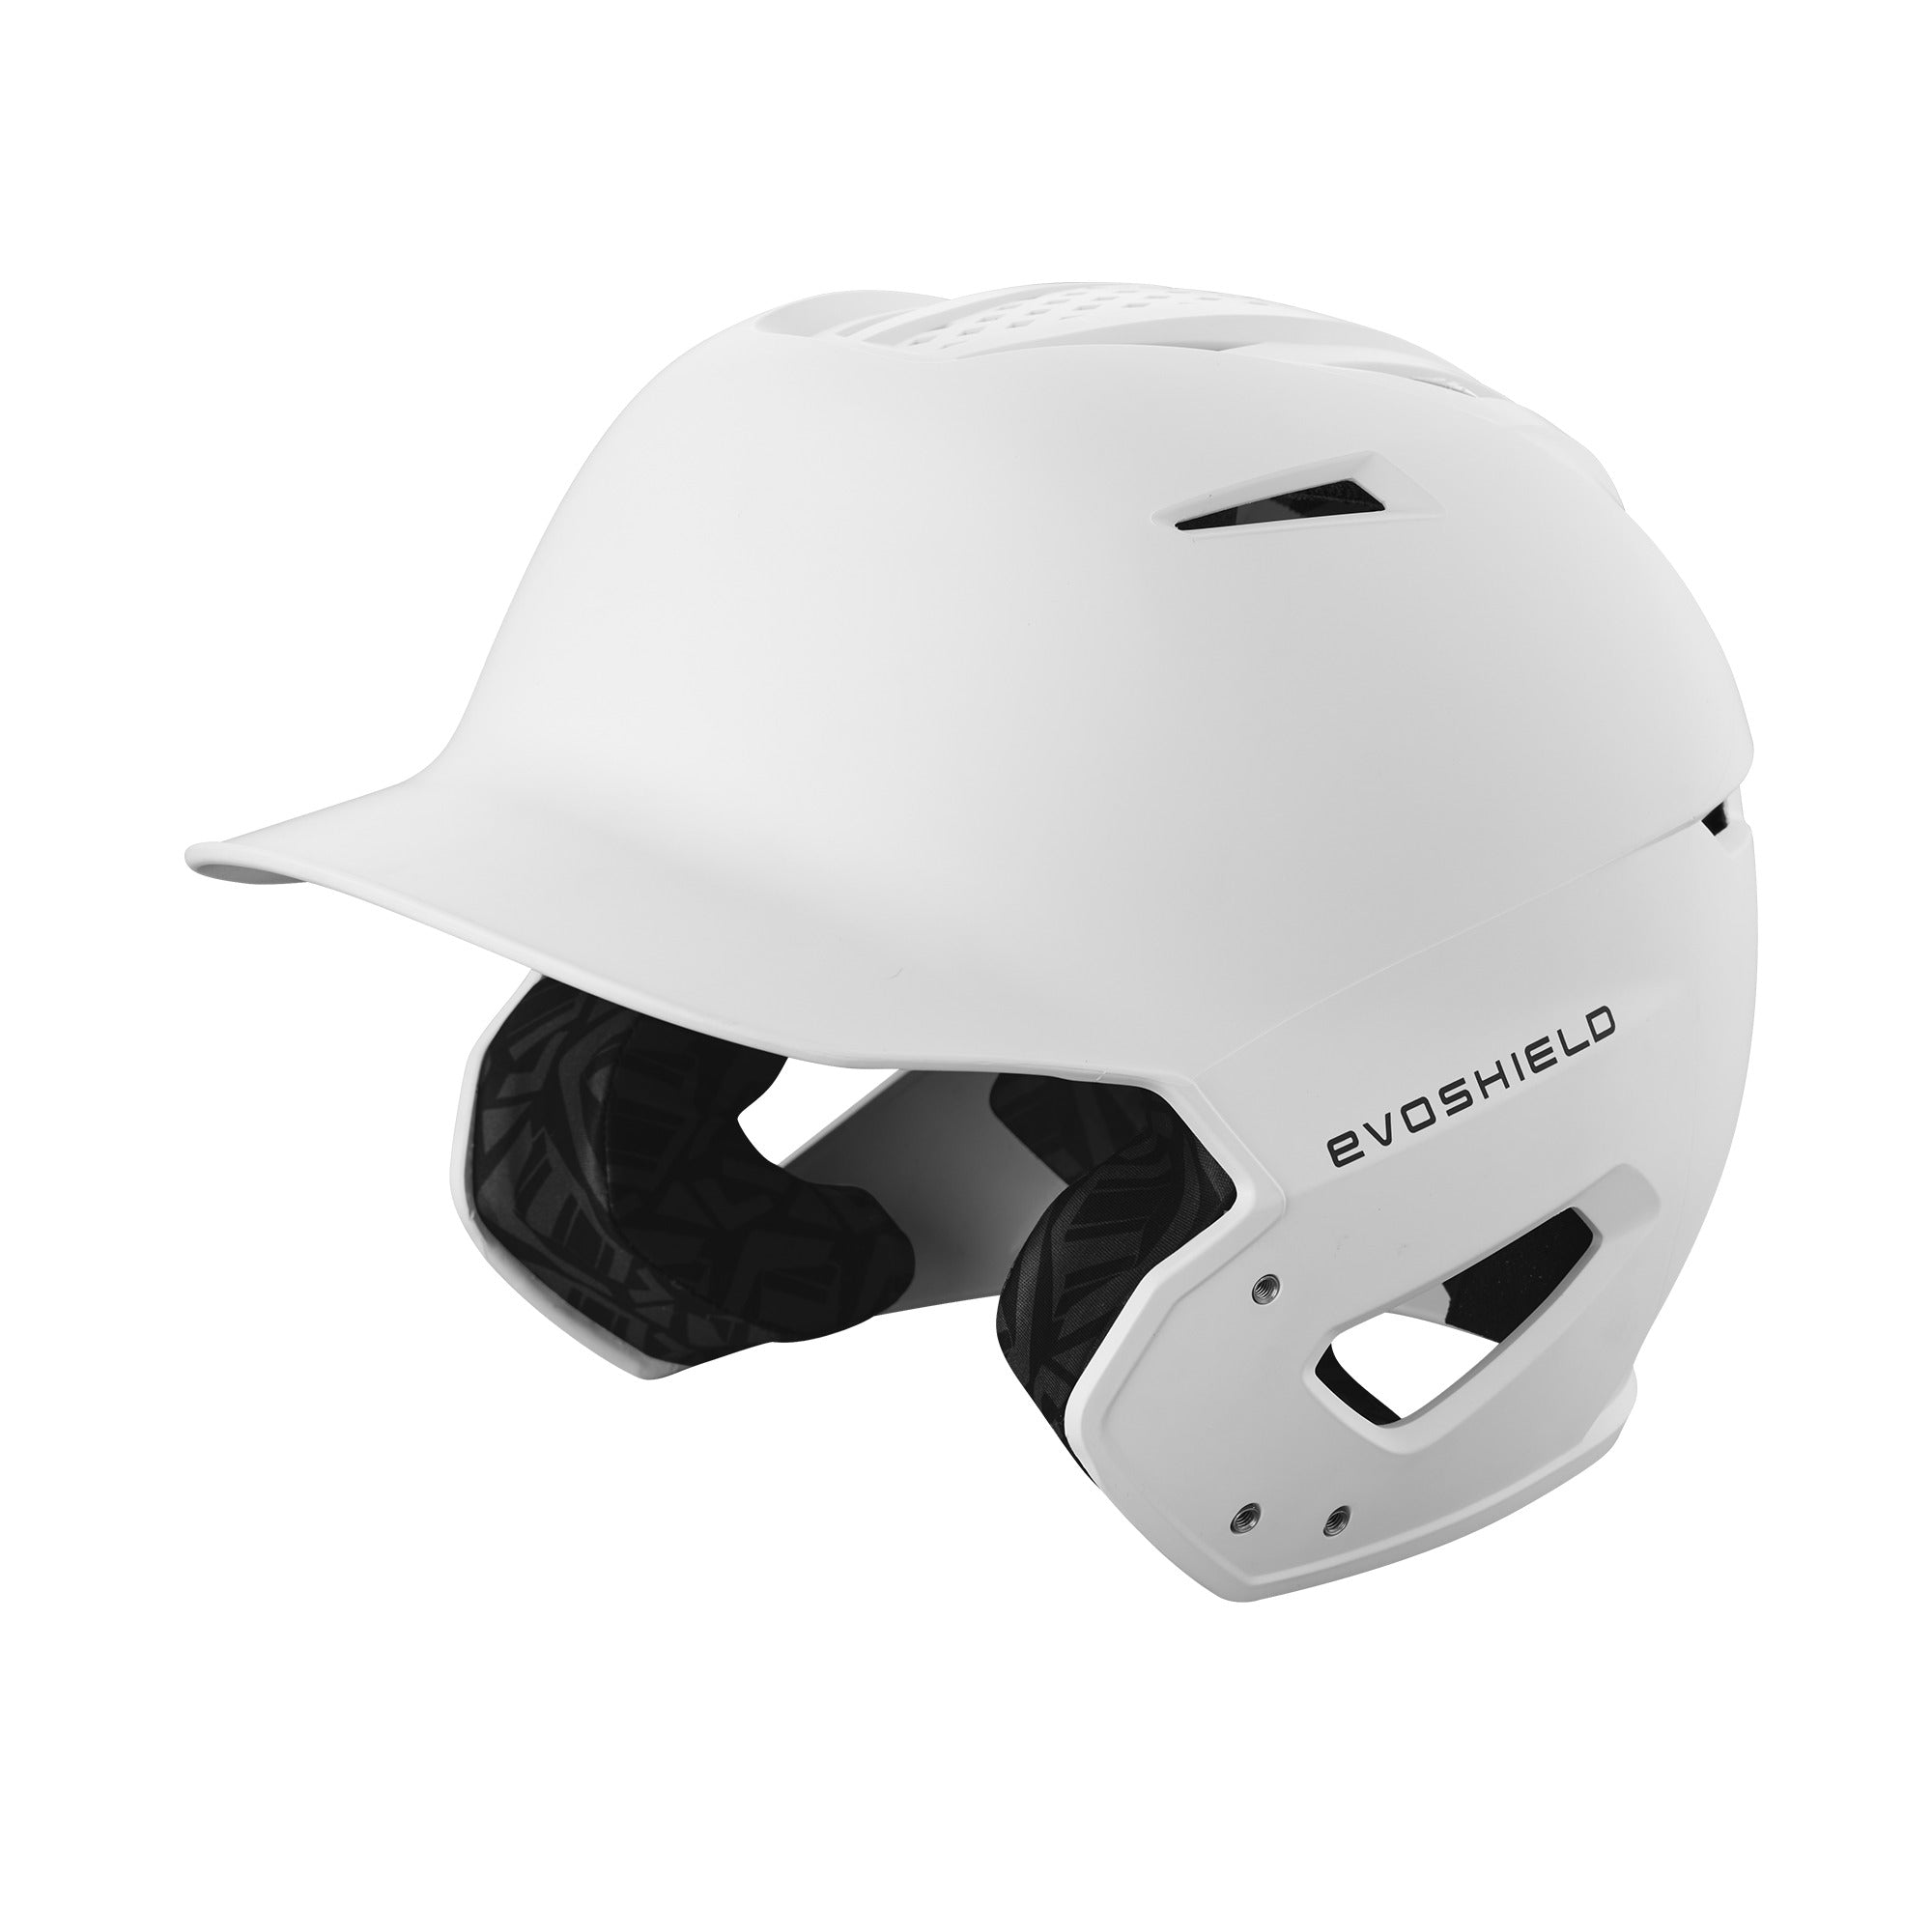 Evoshield XVT 2.0 Matte Batting Helmet  Team White